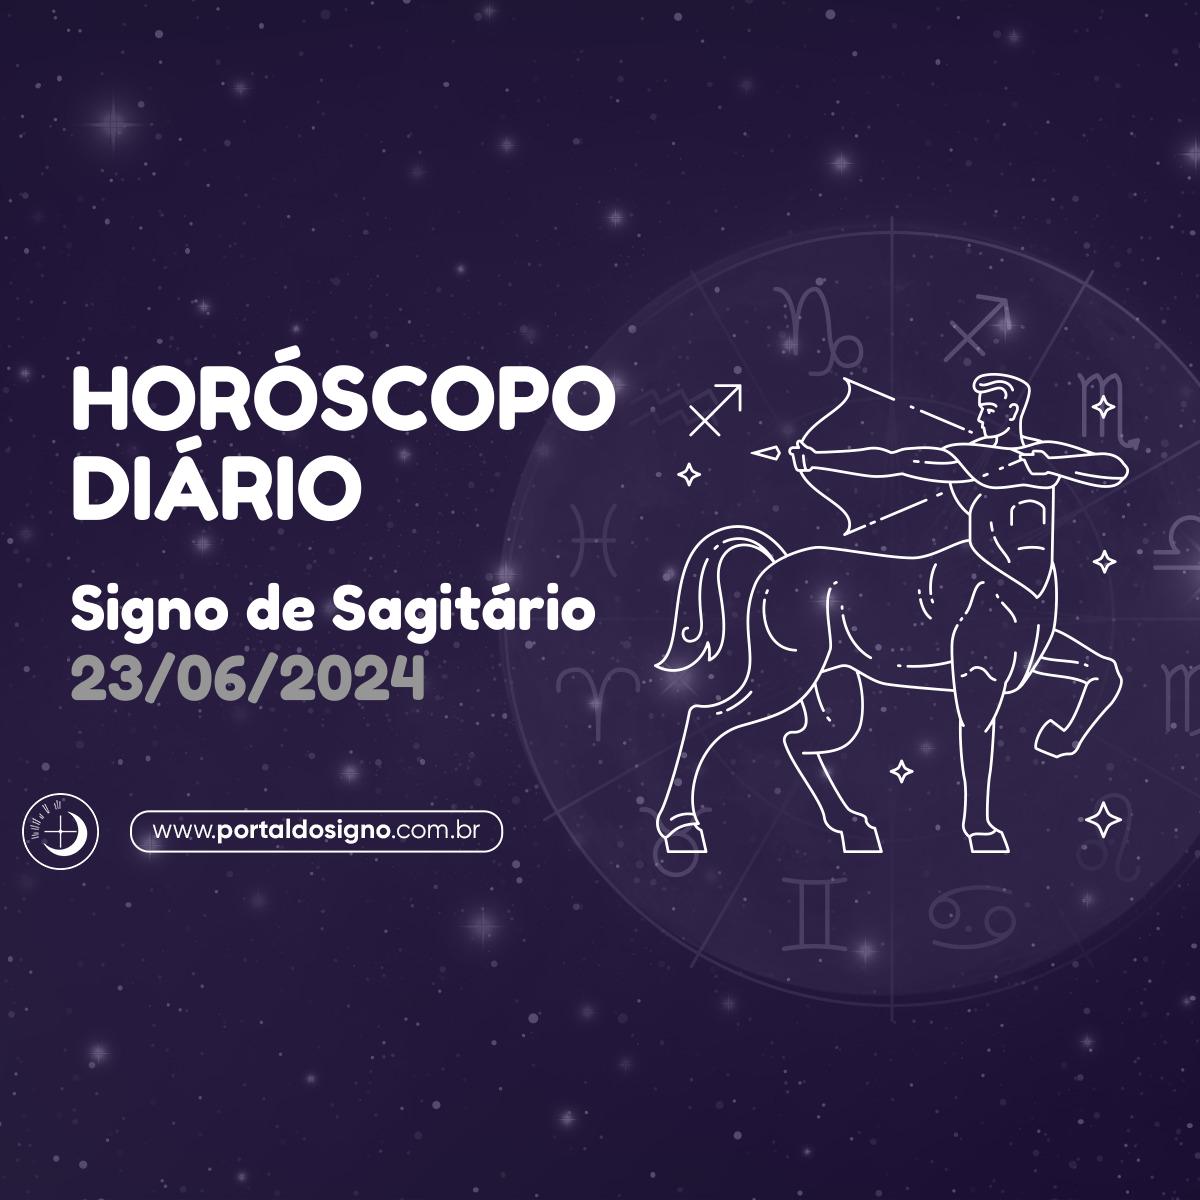 Horóscopo diário para Sagitário em 23/06/2024